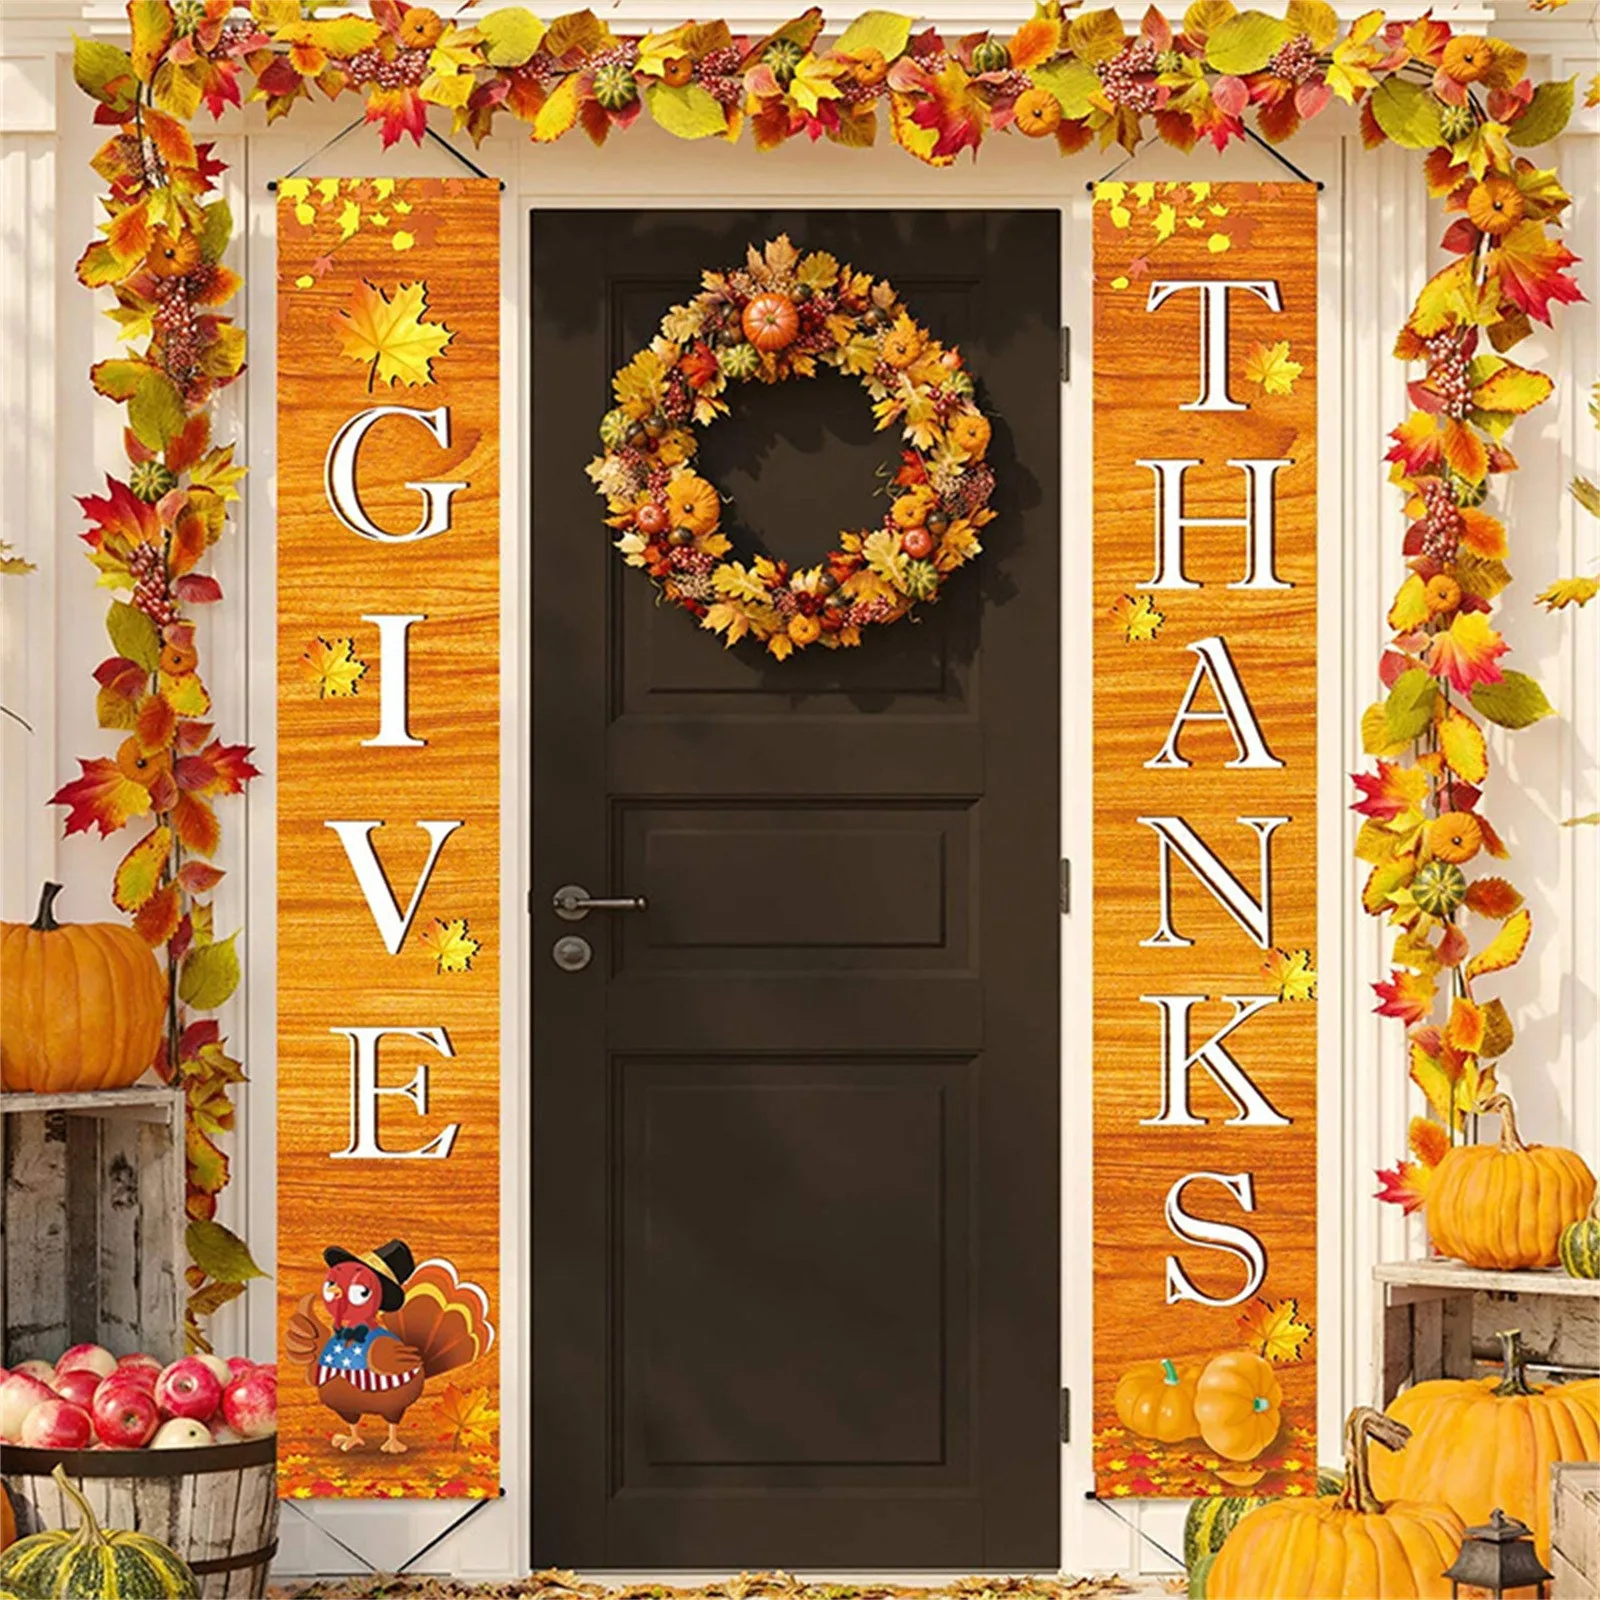 

Декор для крыльца на День Благодарения, осень 72x12 дюймов, висячий баннер, знак крыльца, Осенний декоративный флаг в виде кленового листа